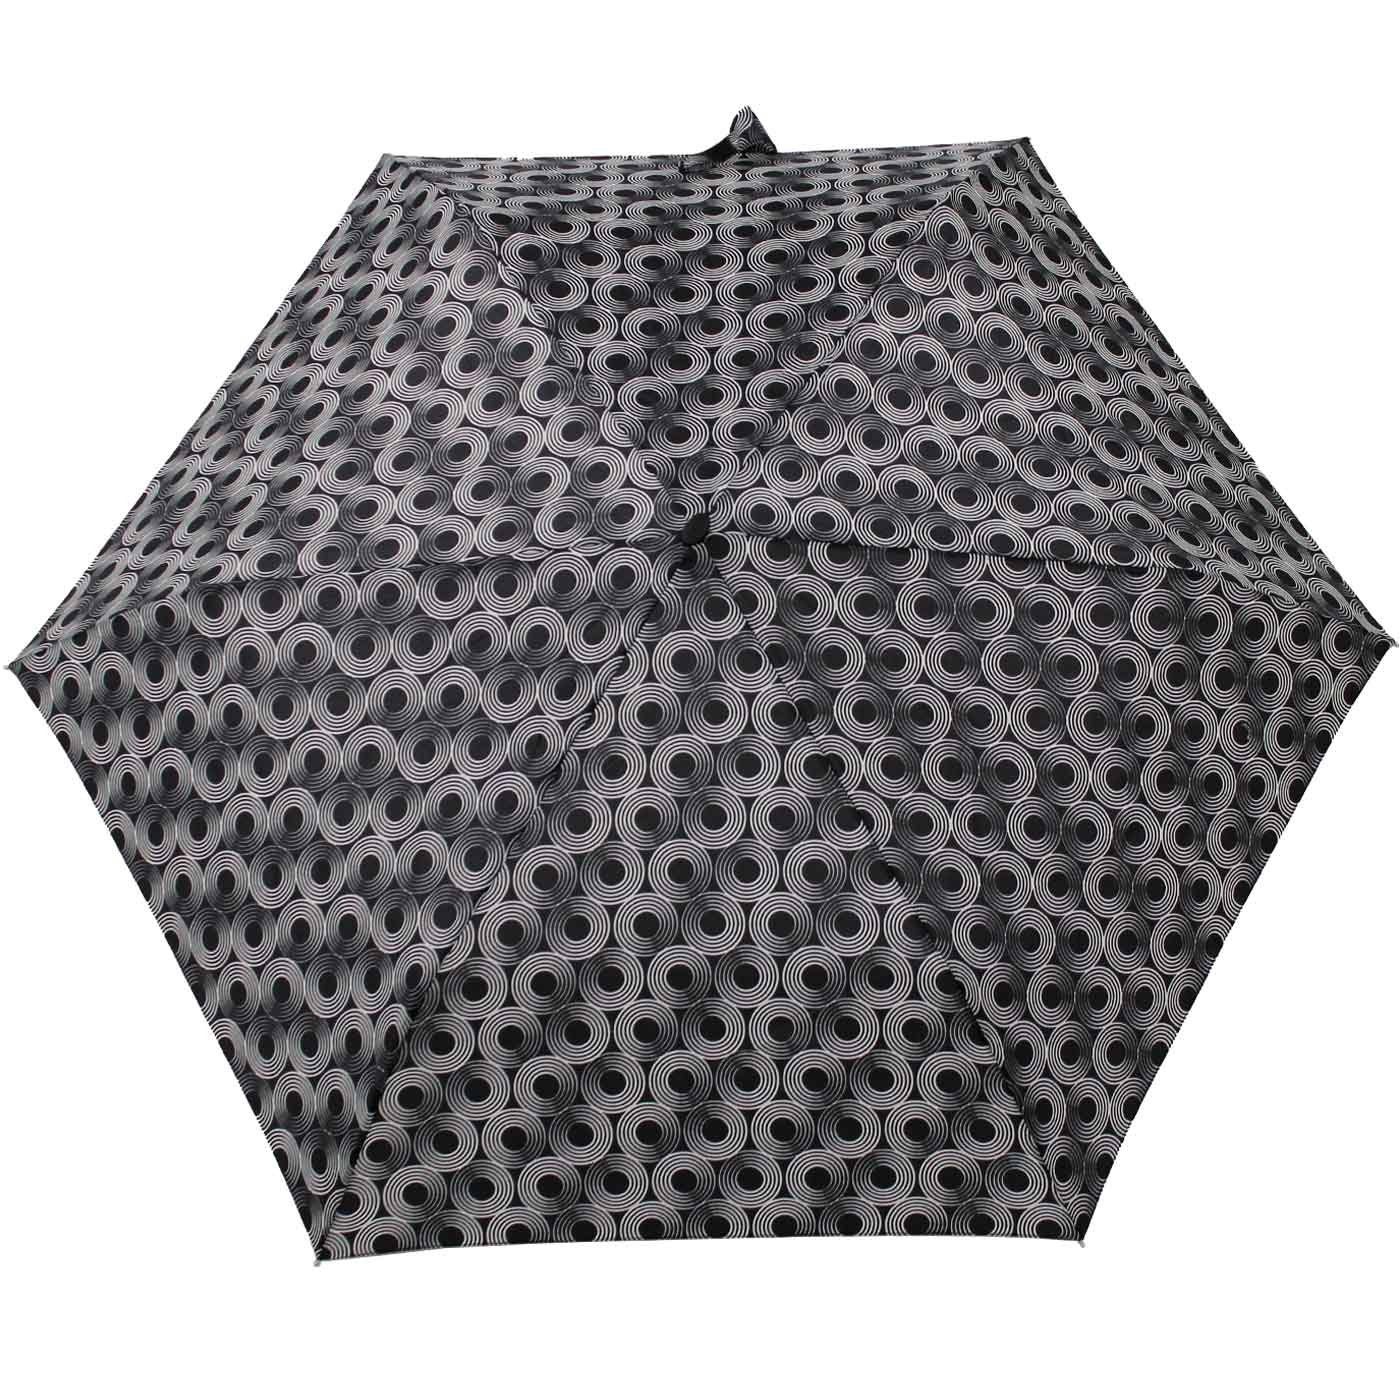 doppler® Begleiter für Schirm überall dieser ein Tasche, Platz und schwarz jede treue flacher findet Taschenregenschirm leichter